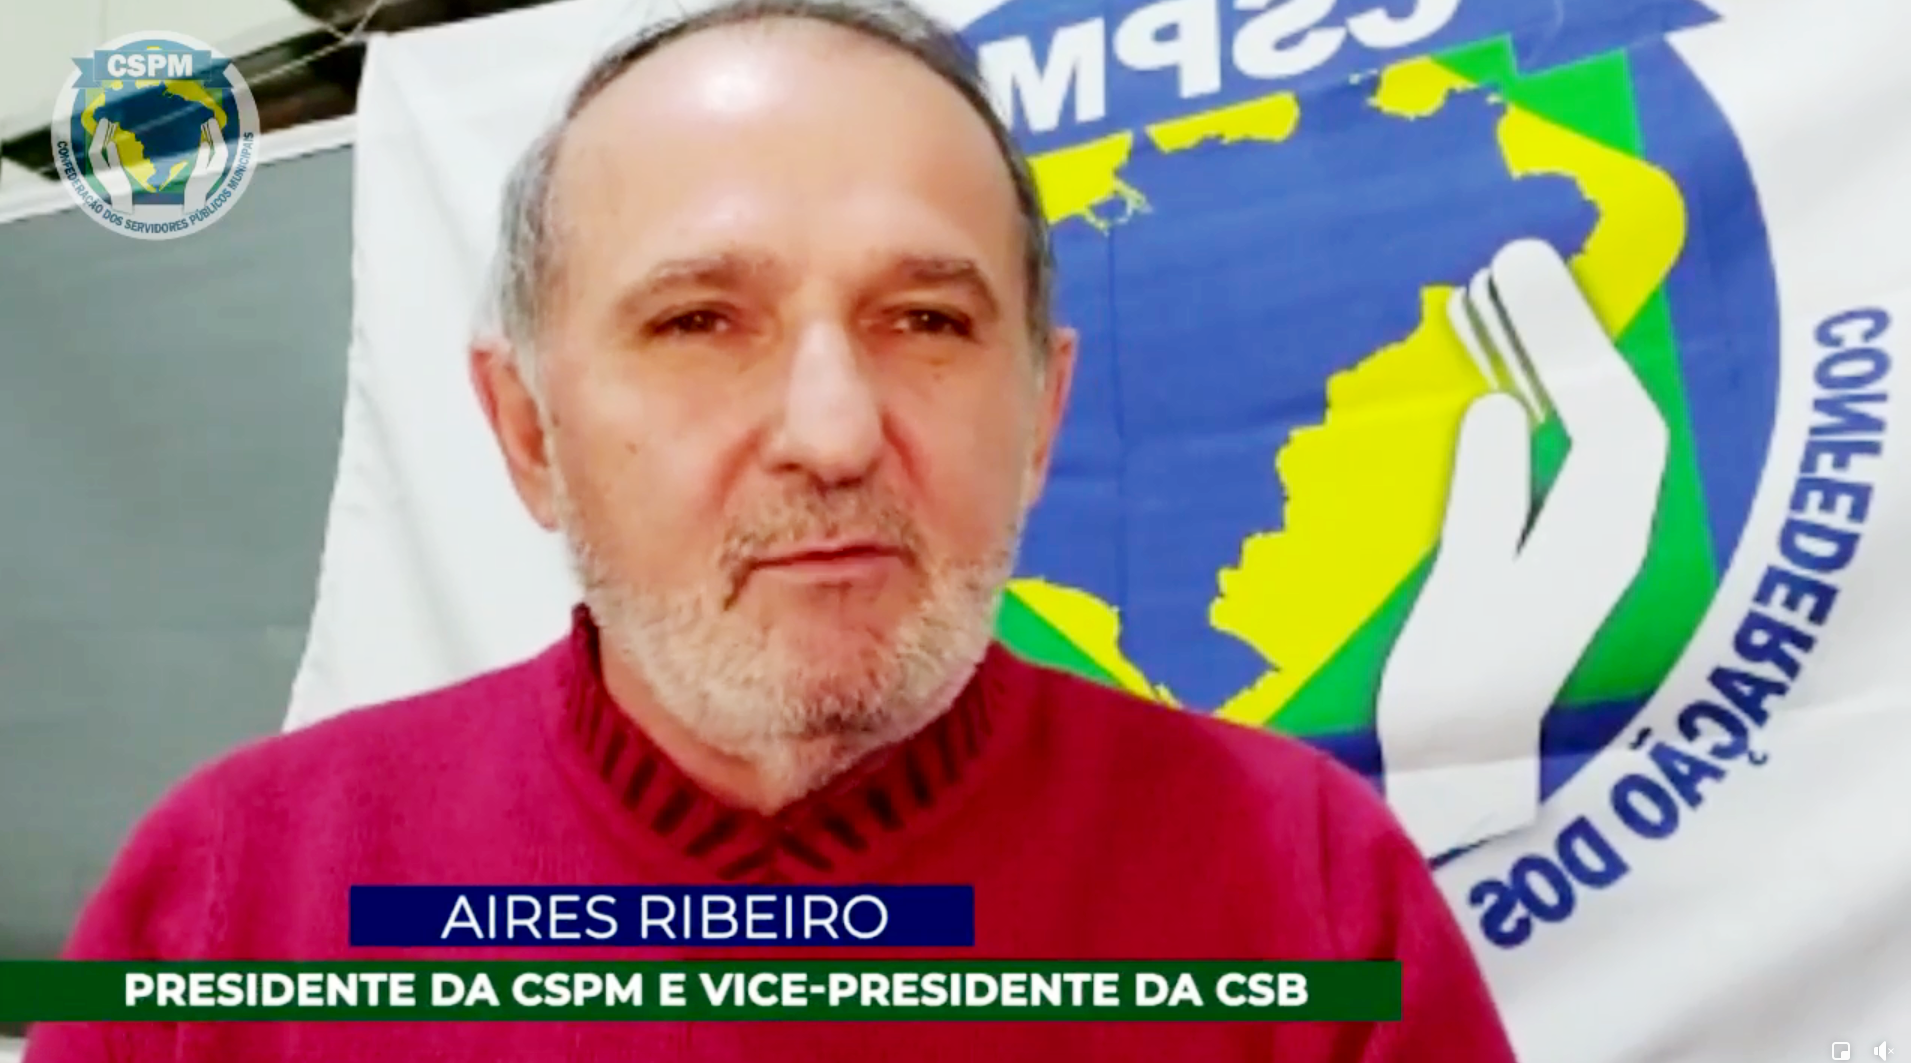 Agenda | Presidente Aires Ribeiro convoca todos a construirmos juntos as próximas ações